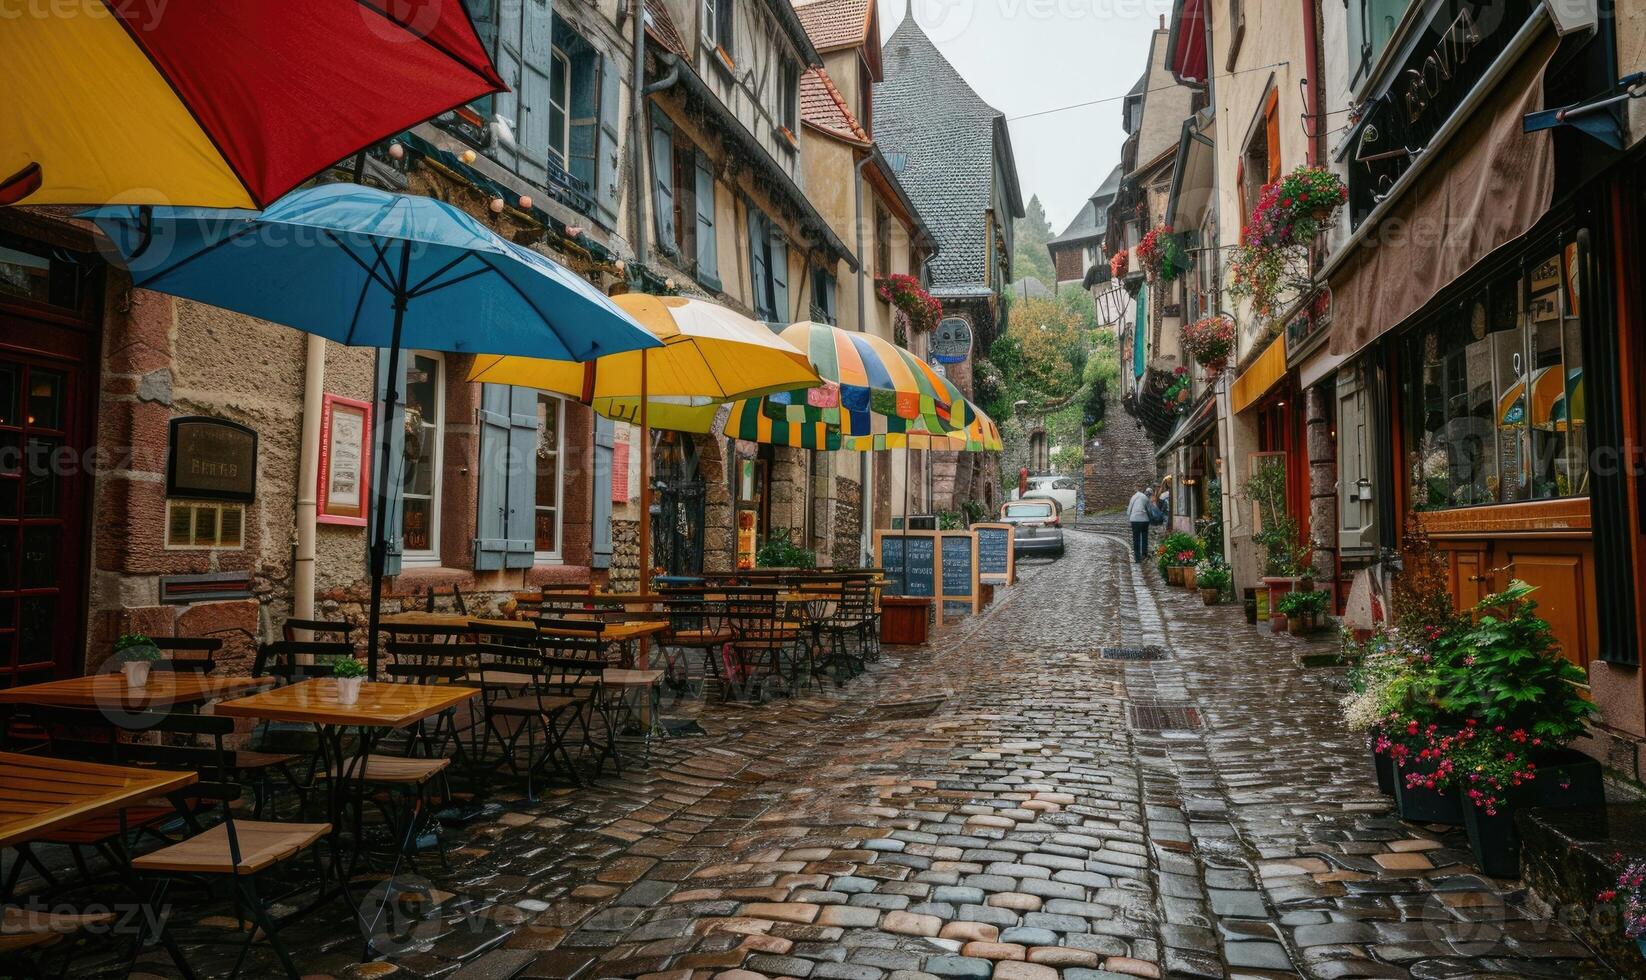 empapado de lluvia guijarro calles devanado mediante un histórico europeo pueblo foto